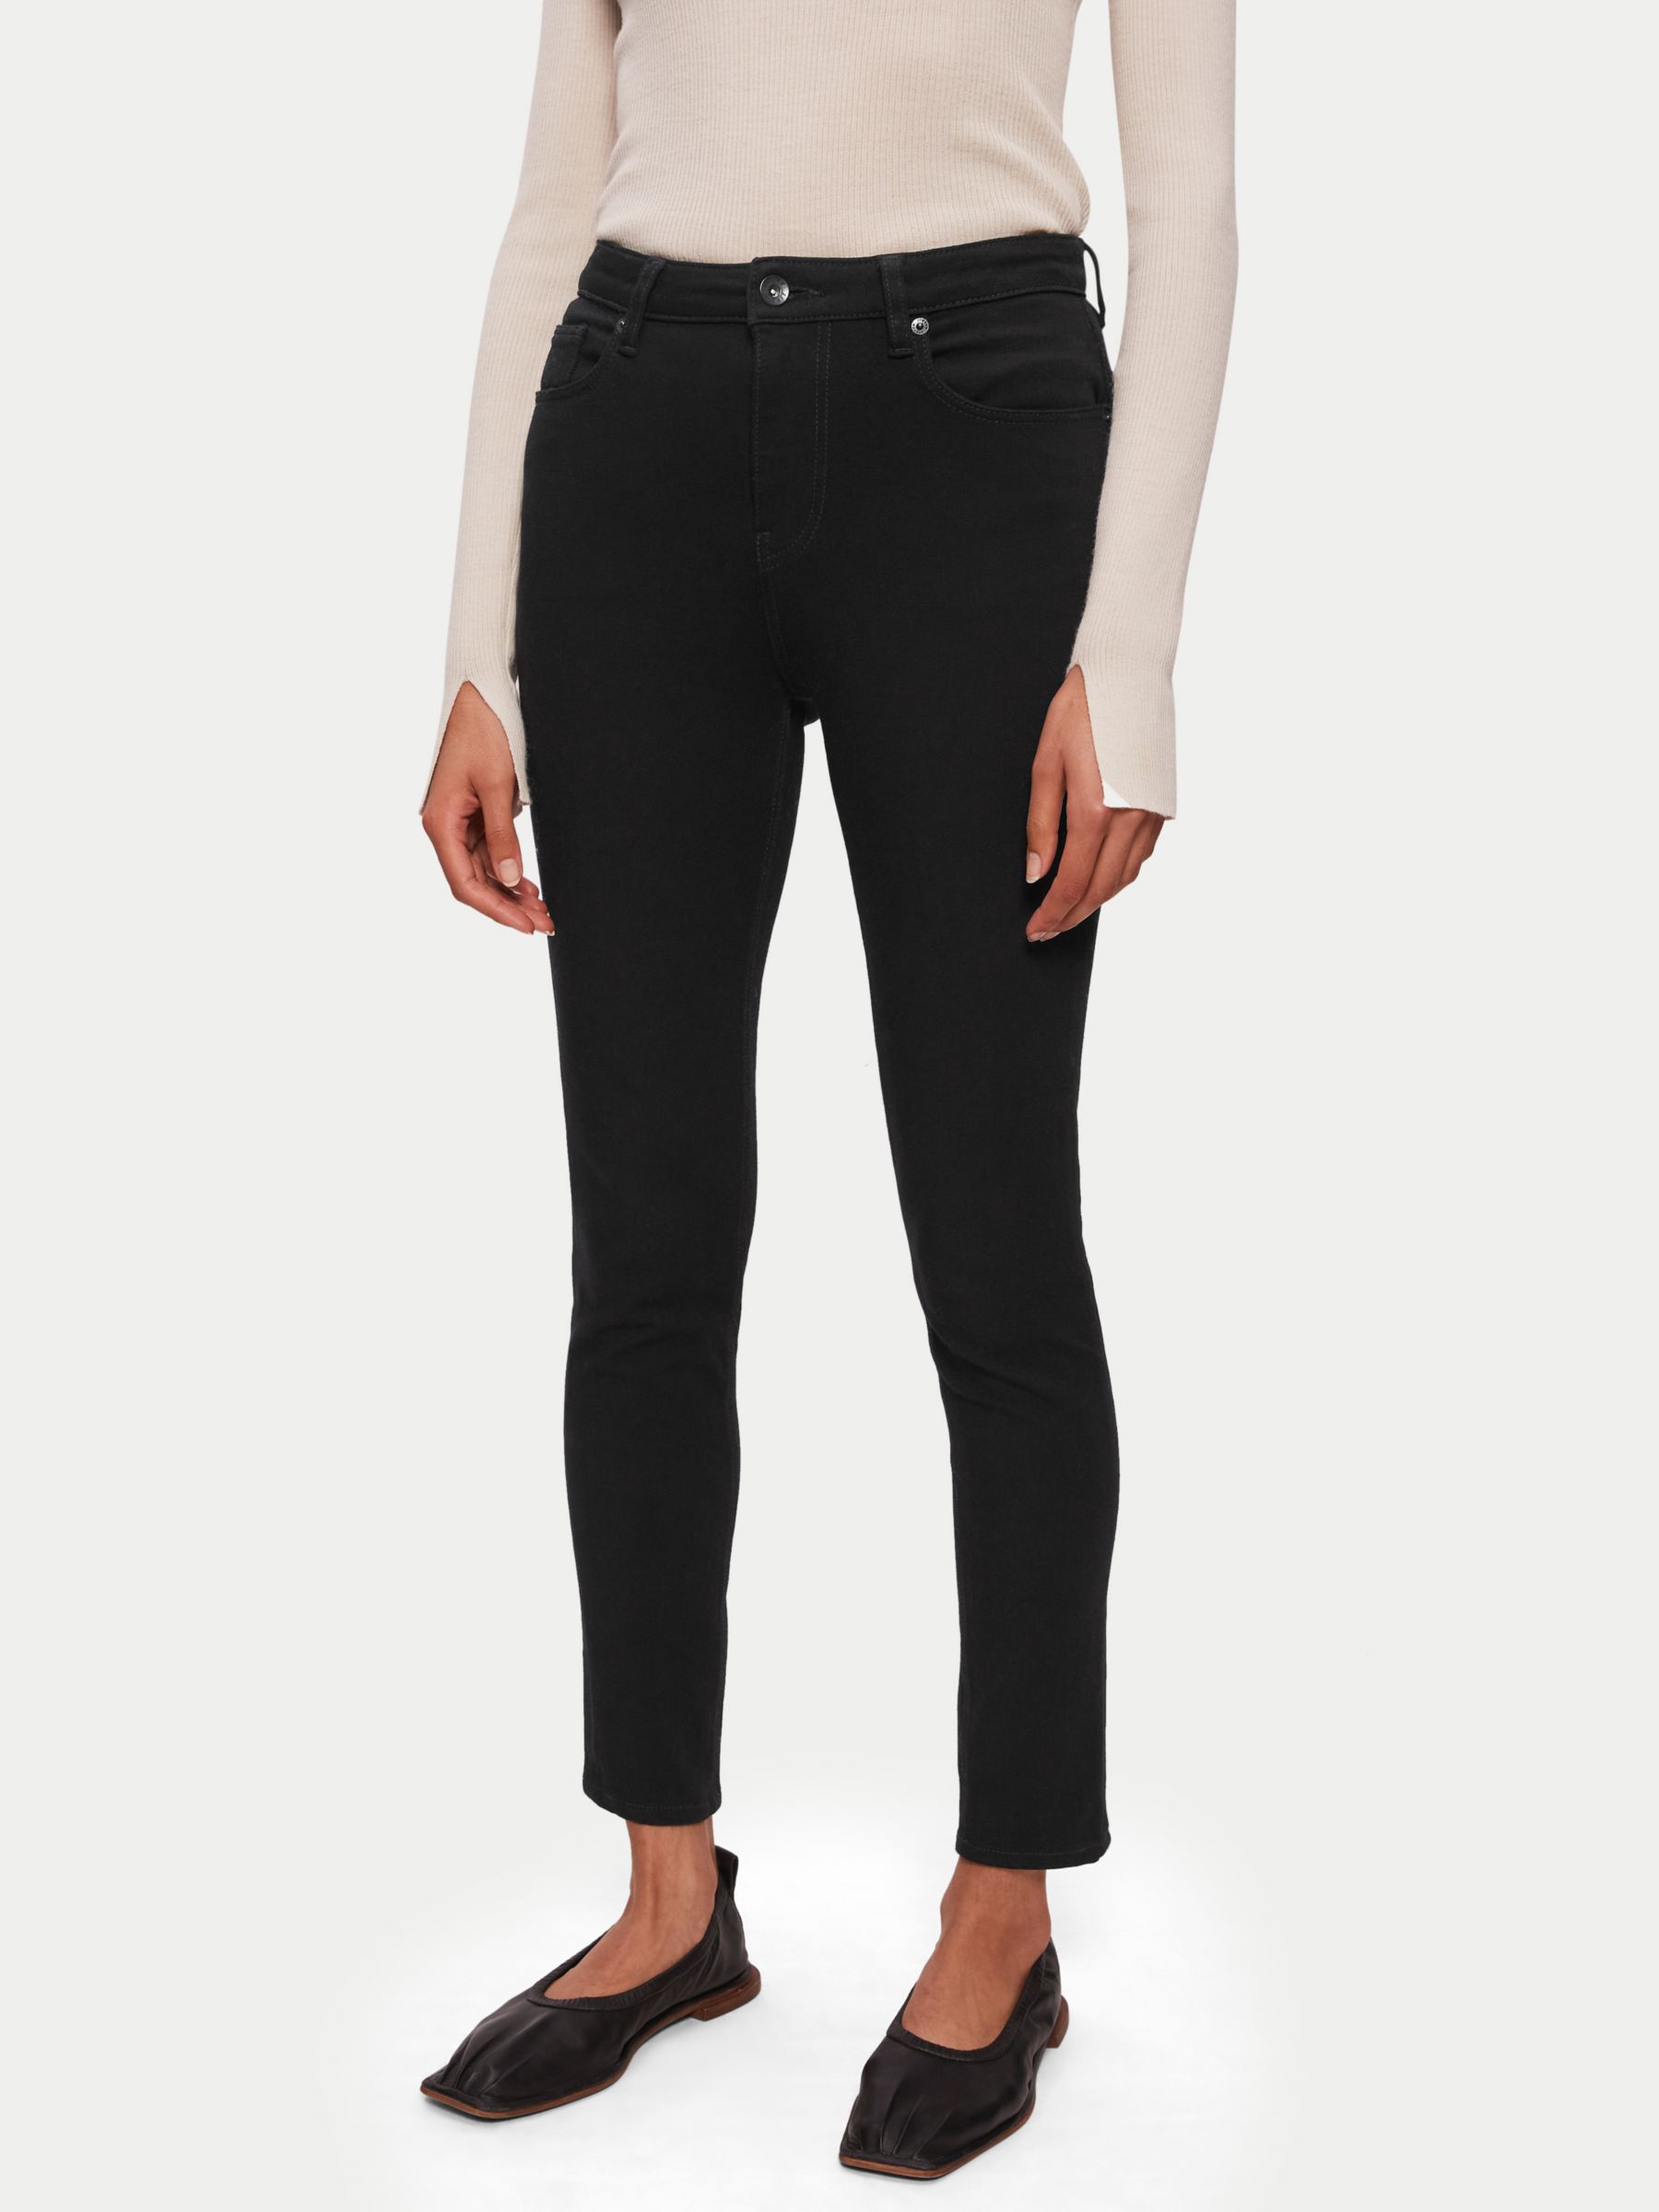 Jigsaw Richmond Skinny Jeans, Black, 24